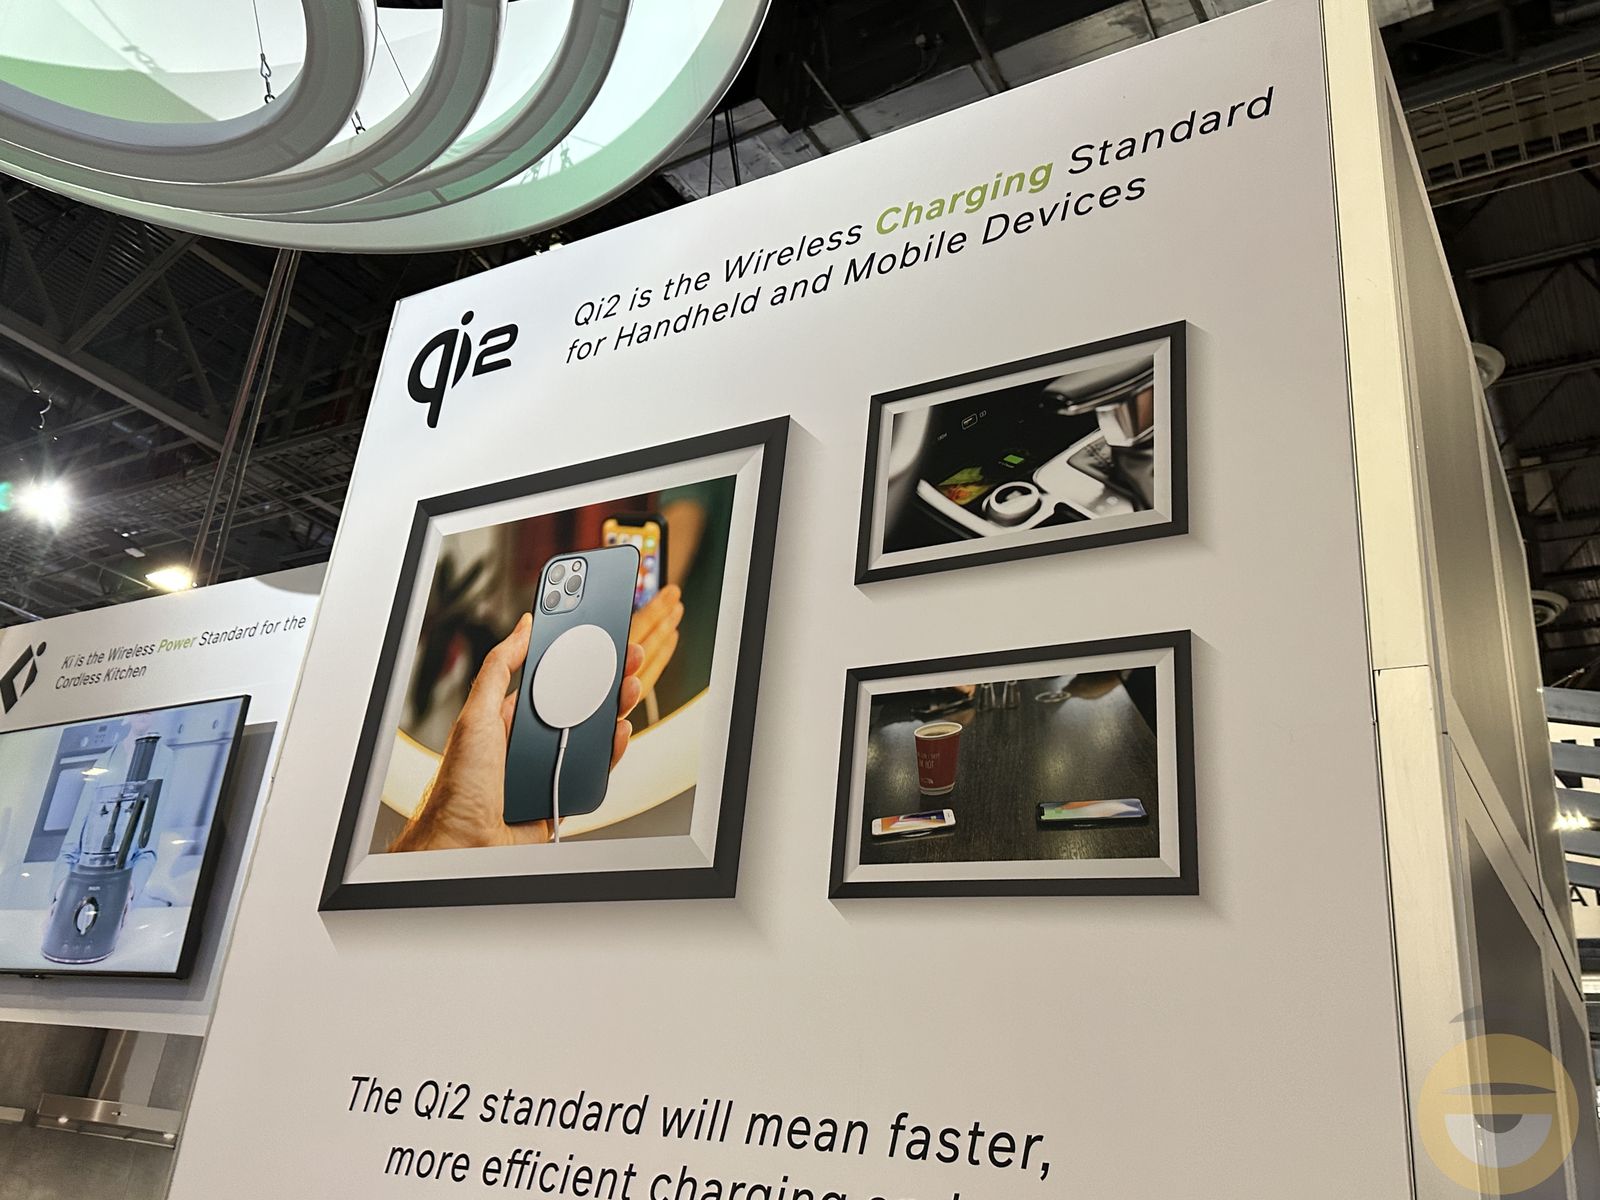 Το νέο ασύρματο πρότυπο φόρτισης Qi2 βάζει σε προτεραιότητα την ταχύτητα και την…ευθυγράμμμιση